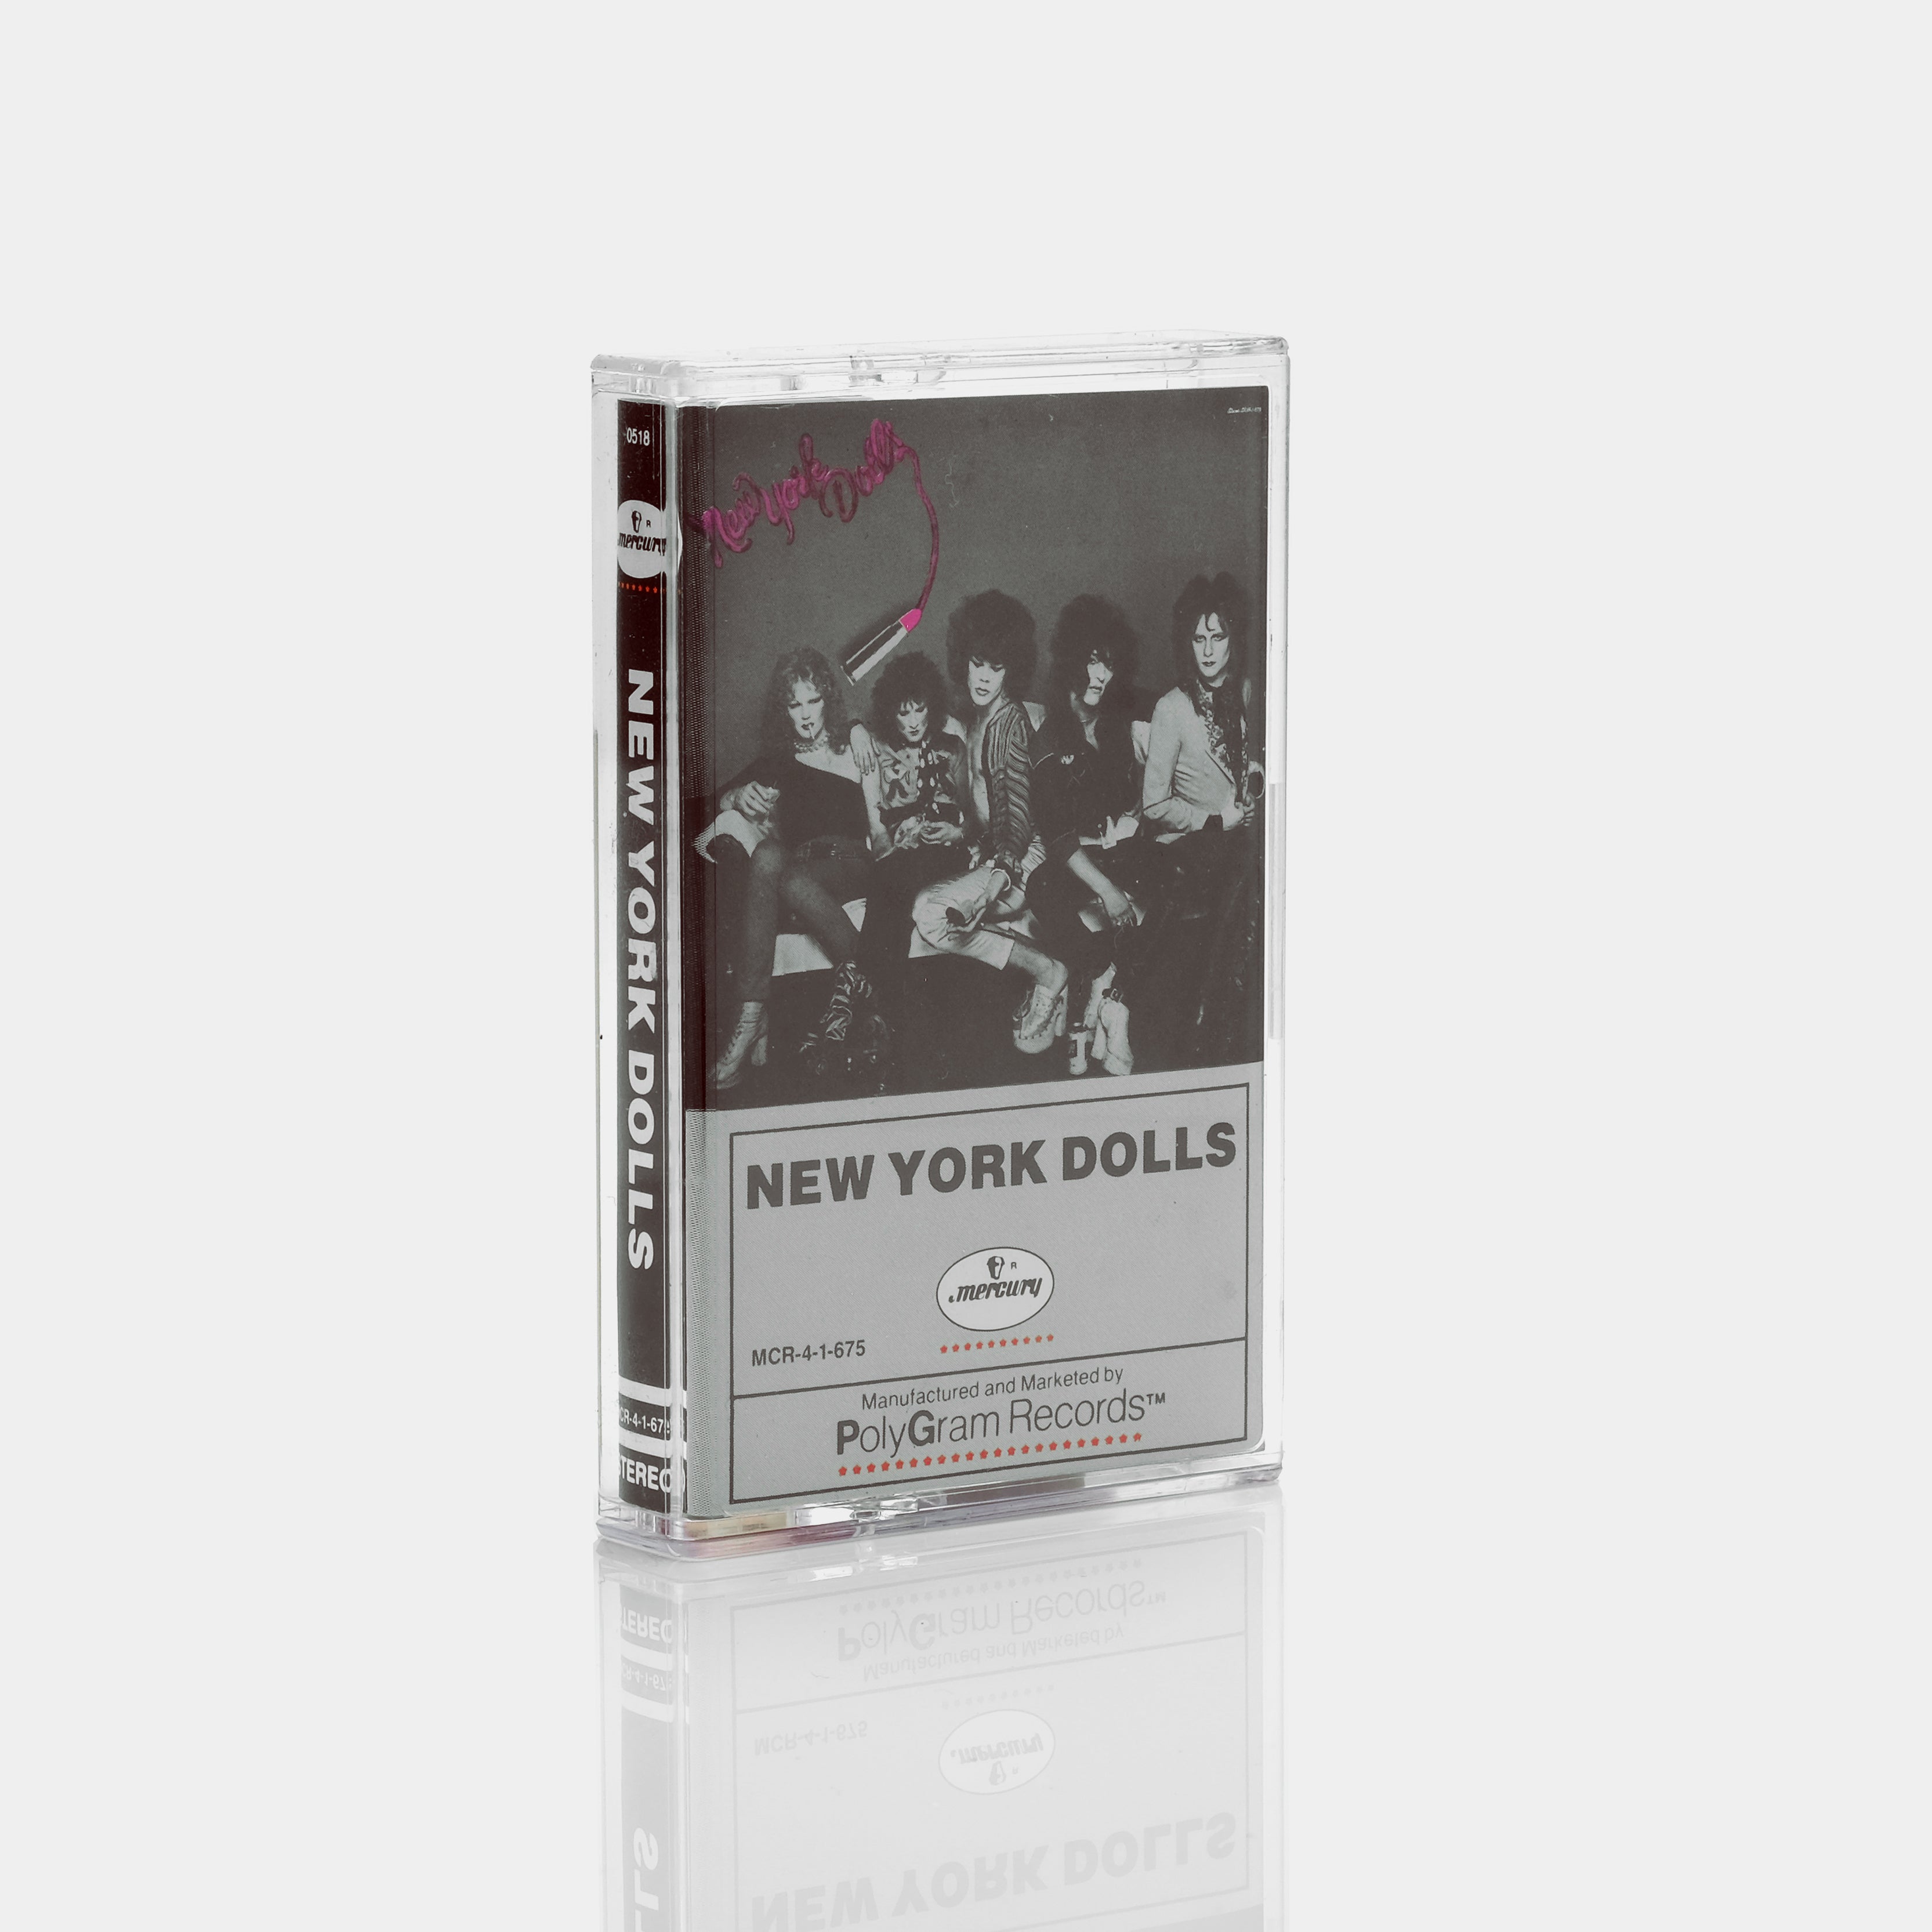 New York Dolls - New York Dolls Cassette Tape